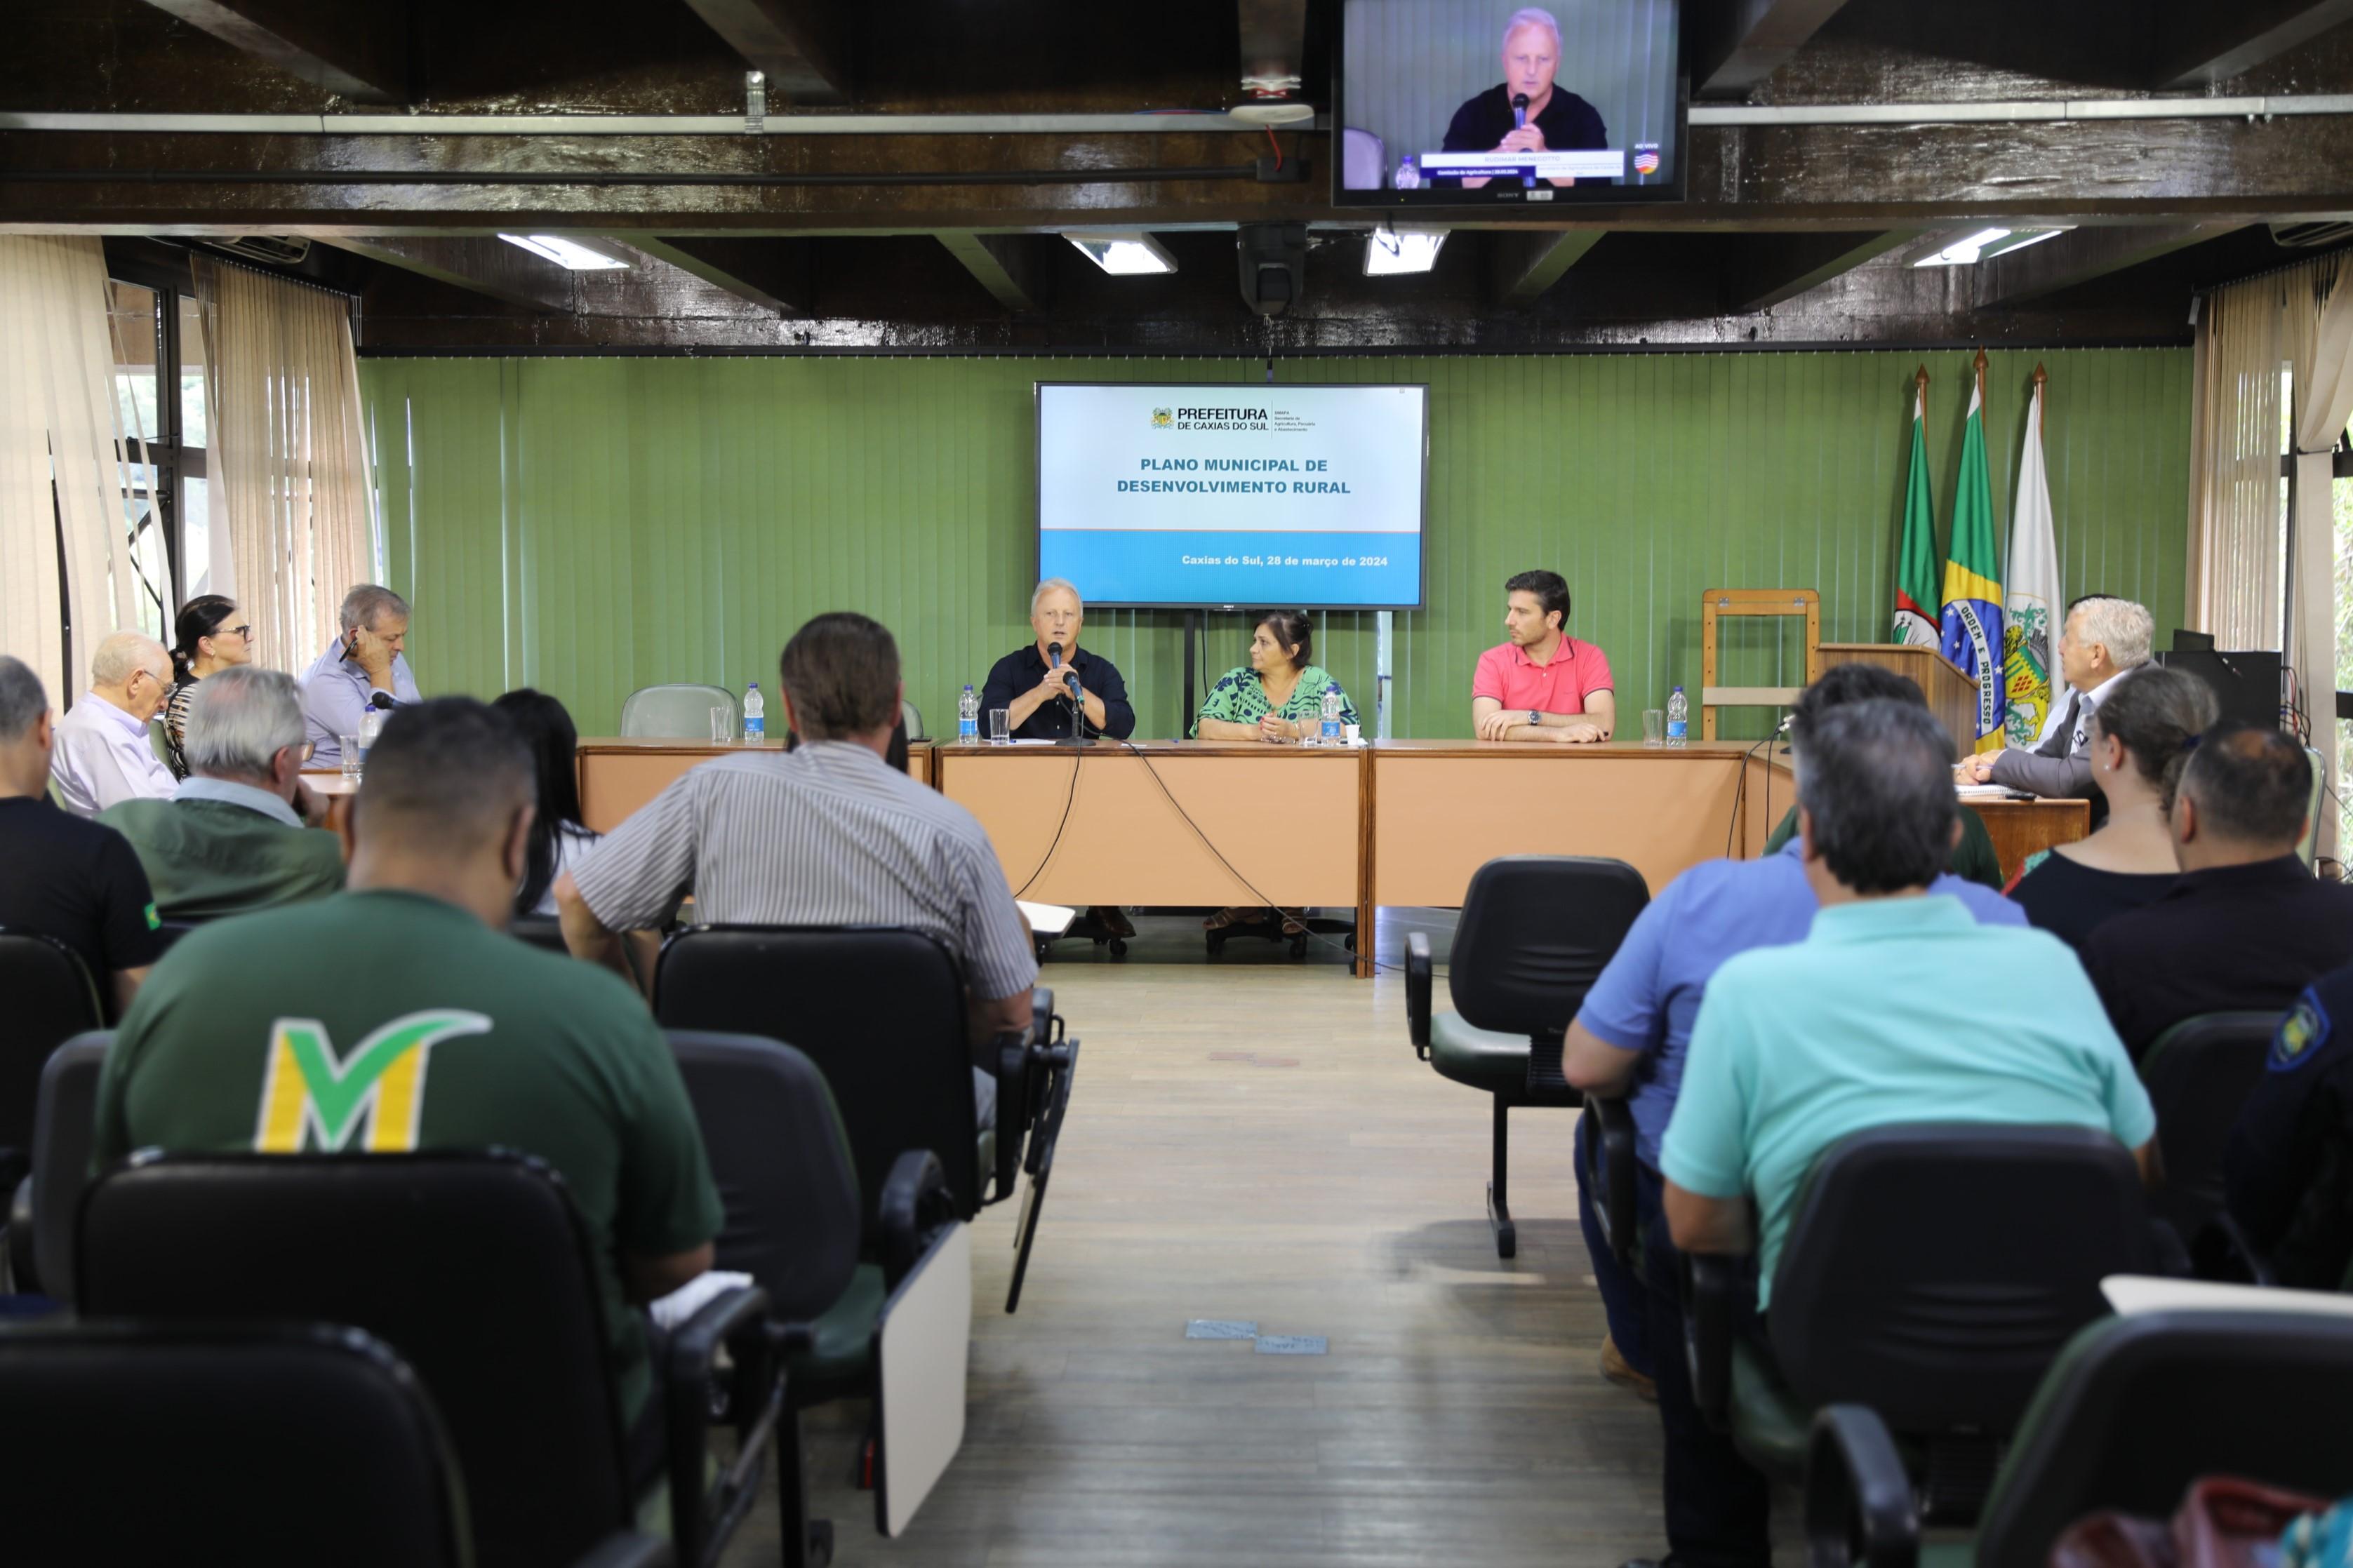 Vereadores recebem detalhes da elaboração do Plano Municipal de Desenvolvimento Rural